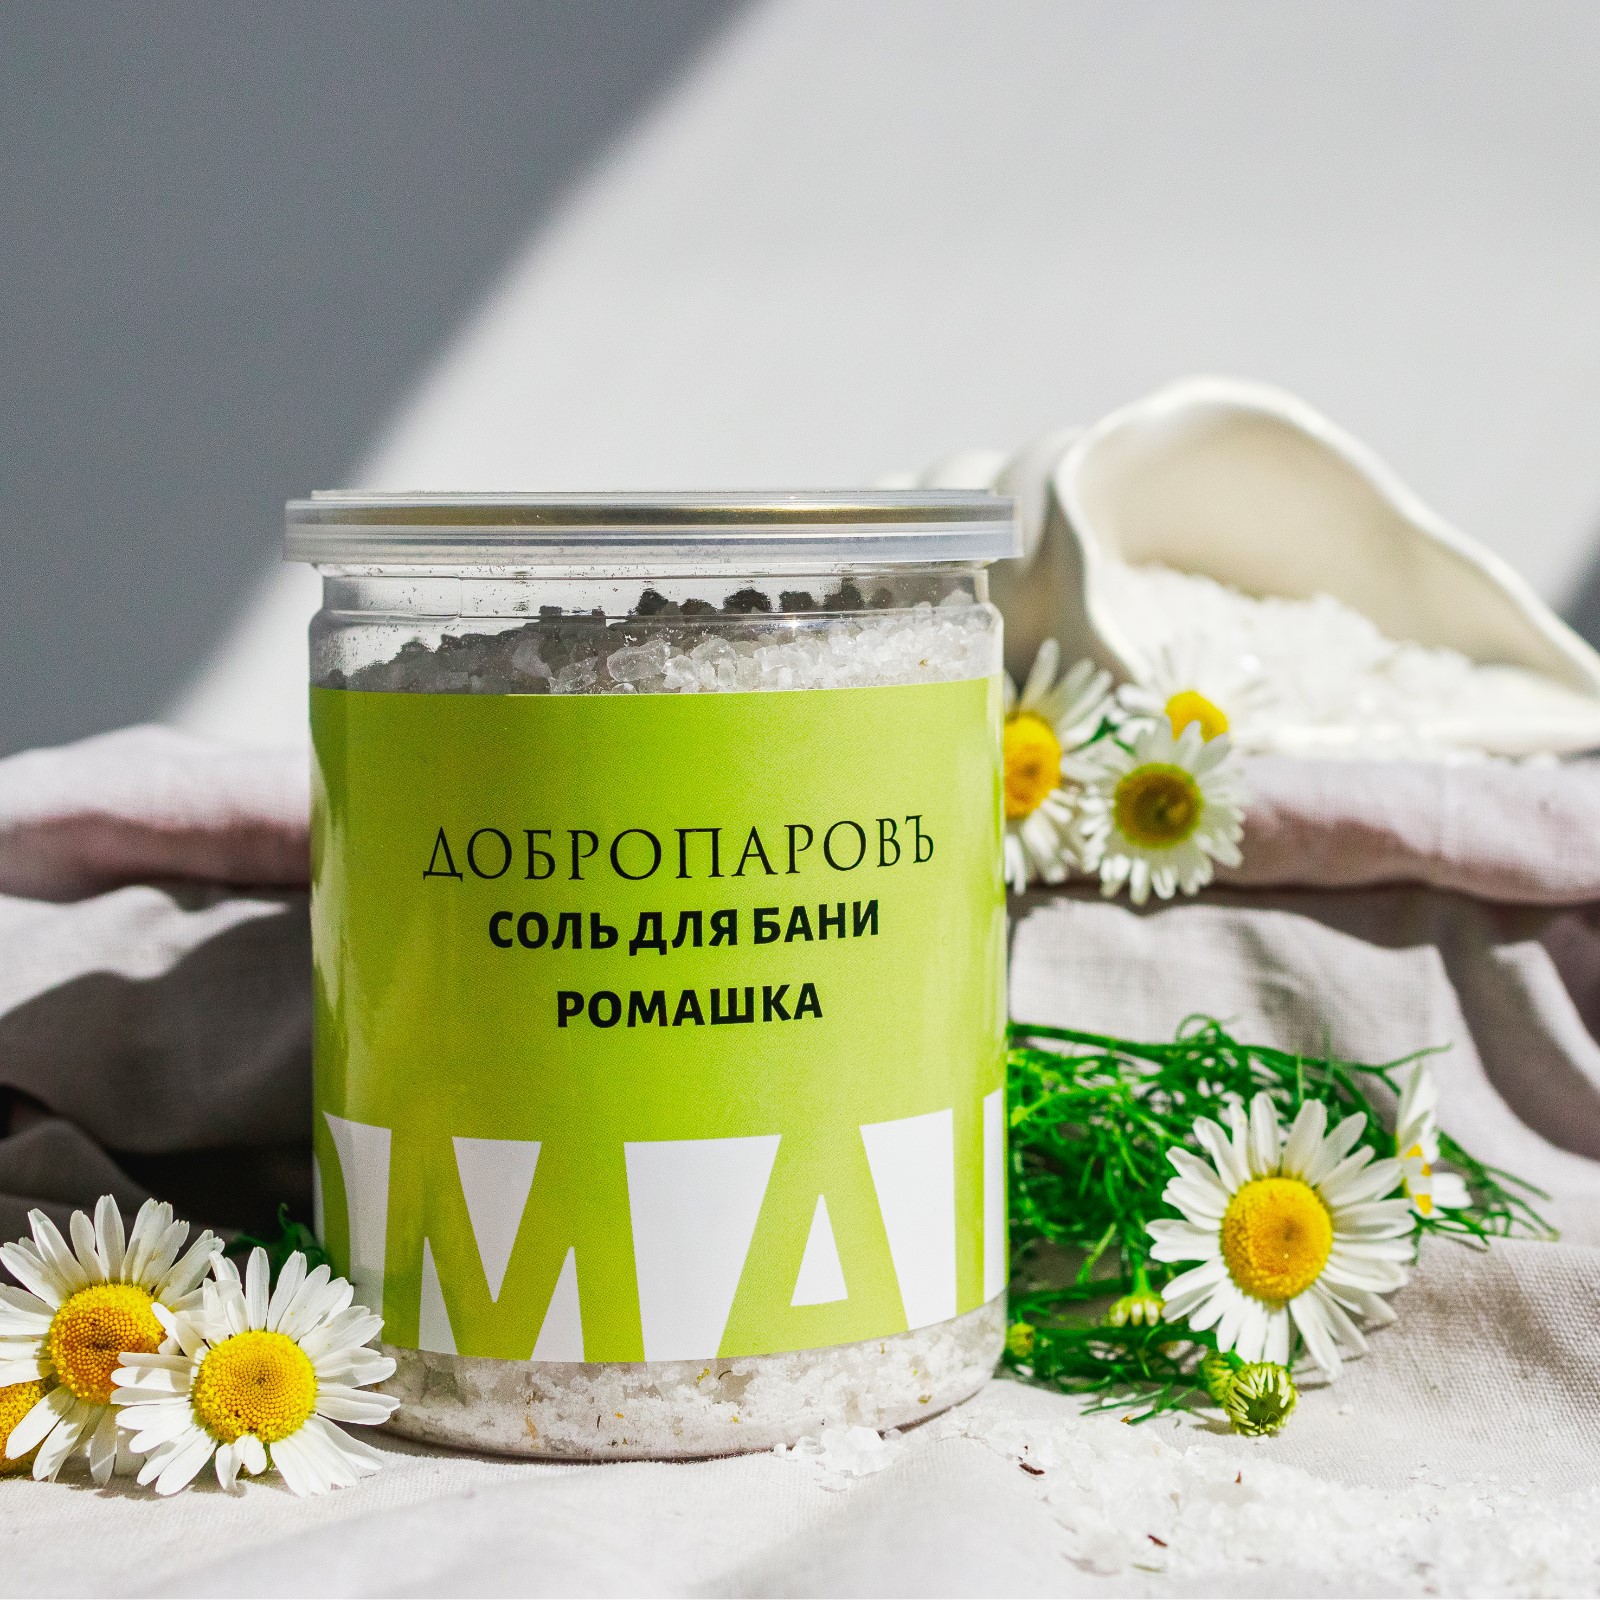 Соль для бани Добропаровъ с травами «Ромашка» в прозрачной в банке 400 гр - фото 6